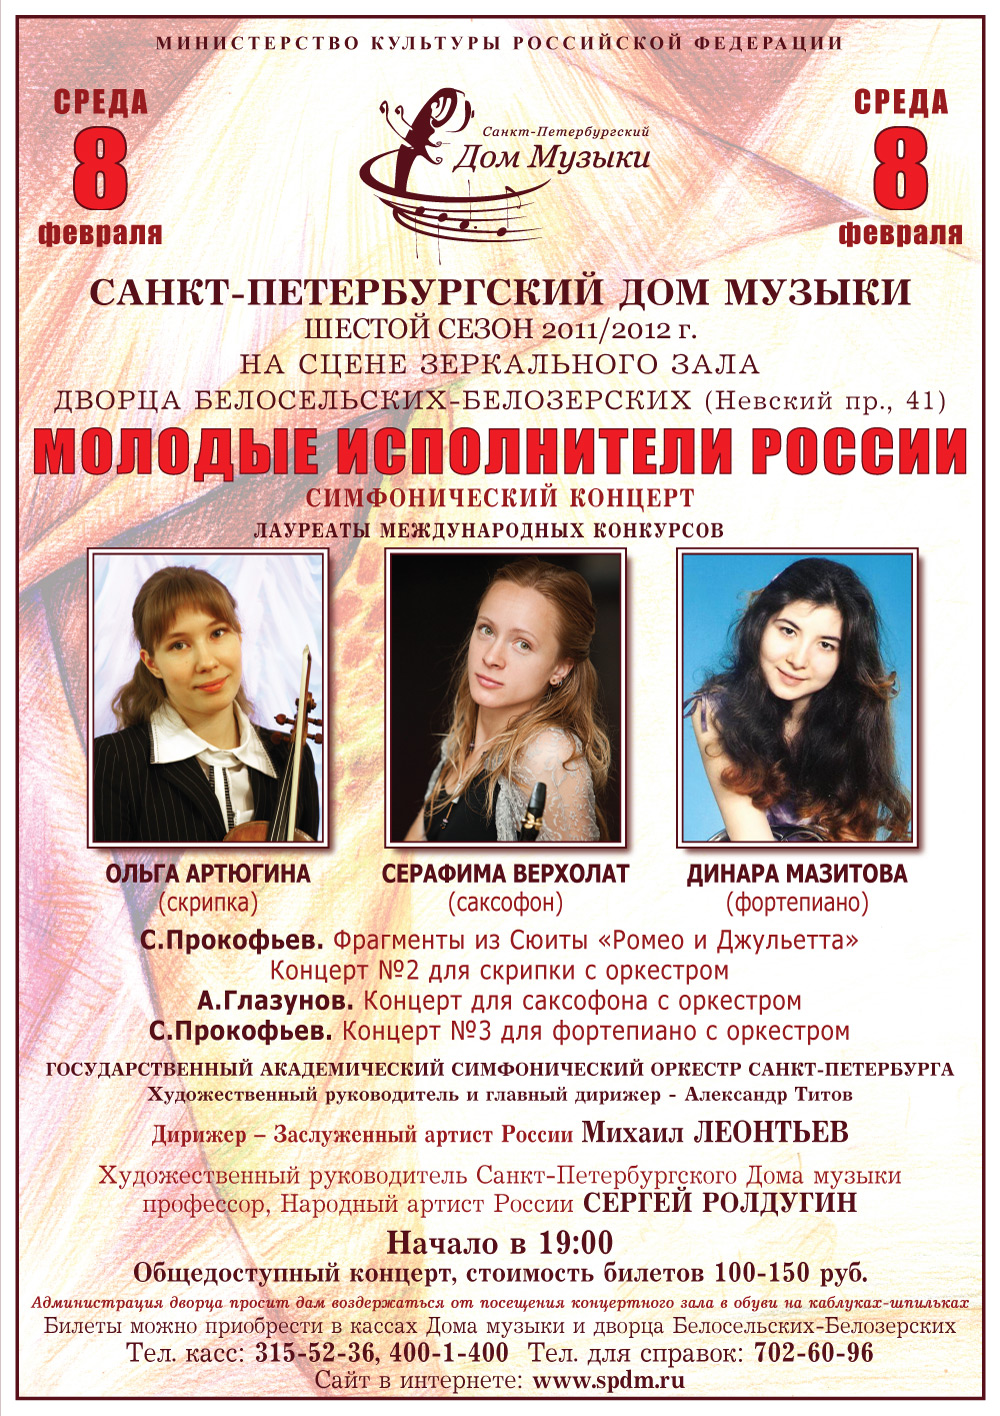 Музыка и молодость в расцвете: концерт Петербургского Дома музыки ко Дню всех влюбленных